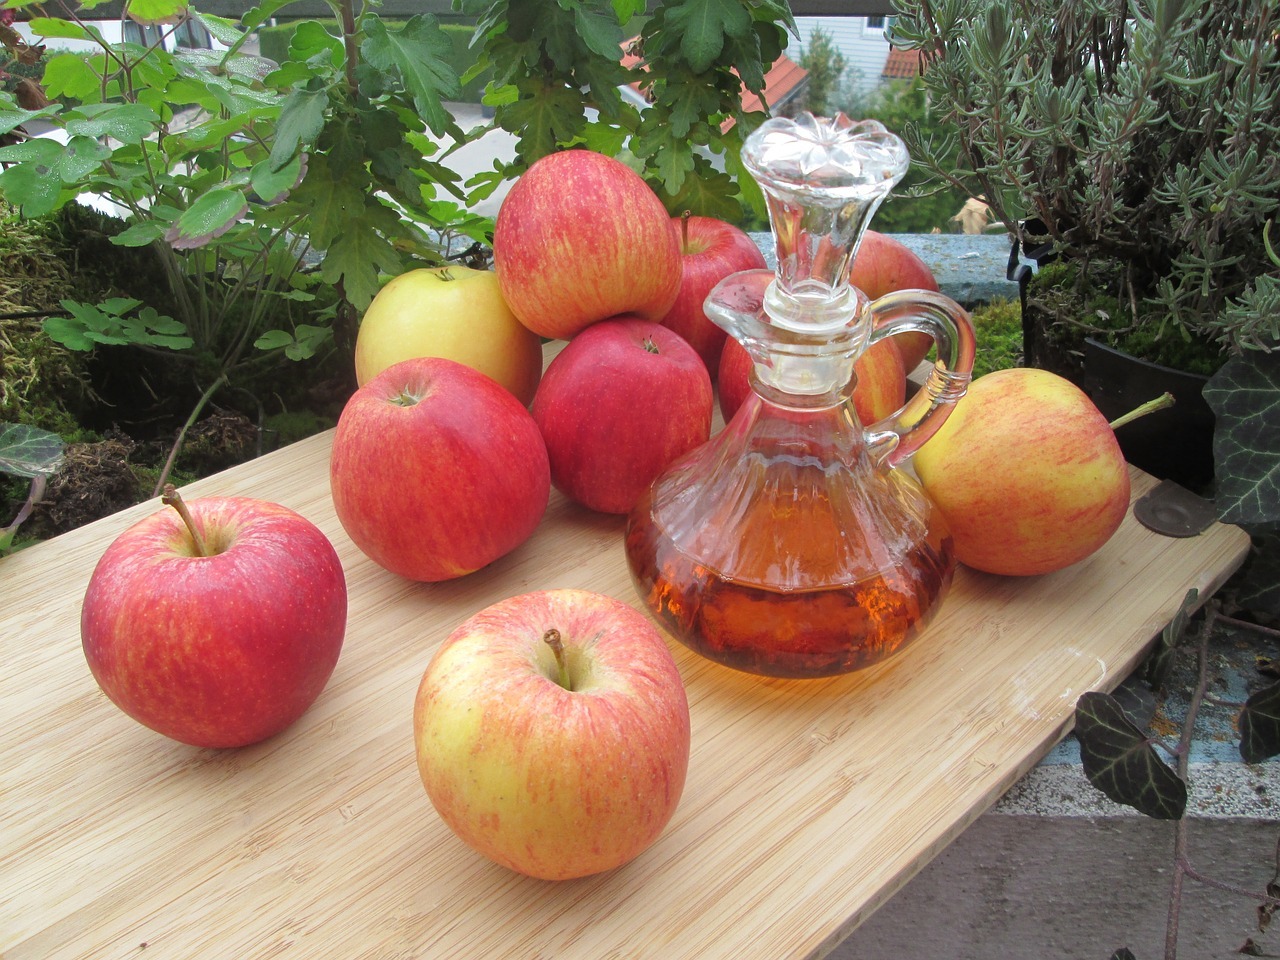 Cunto tiempo se debe tomar vinagre de manzana en ayunas?